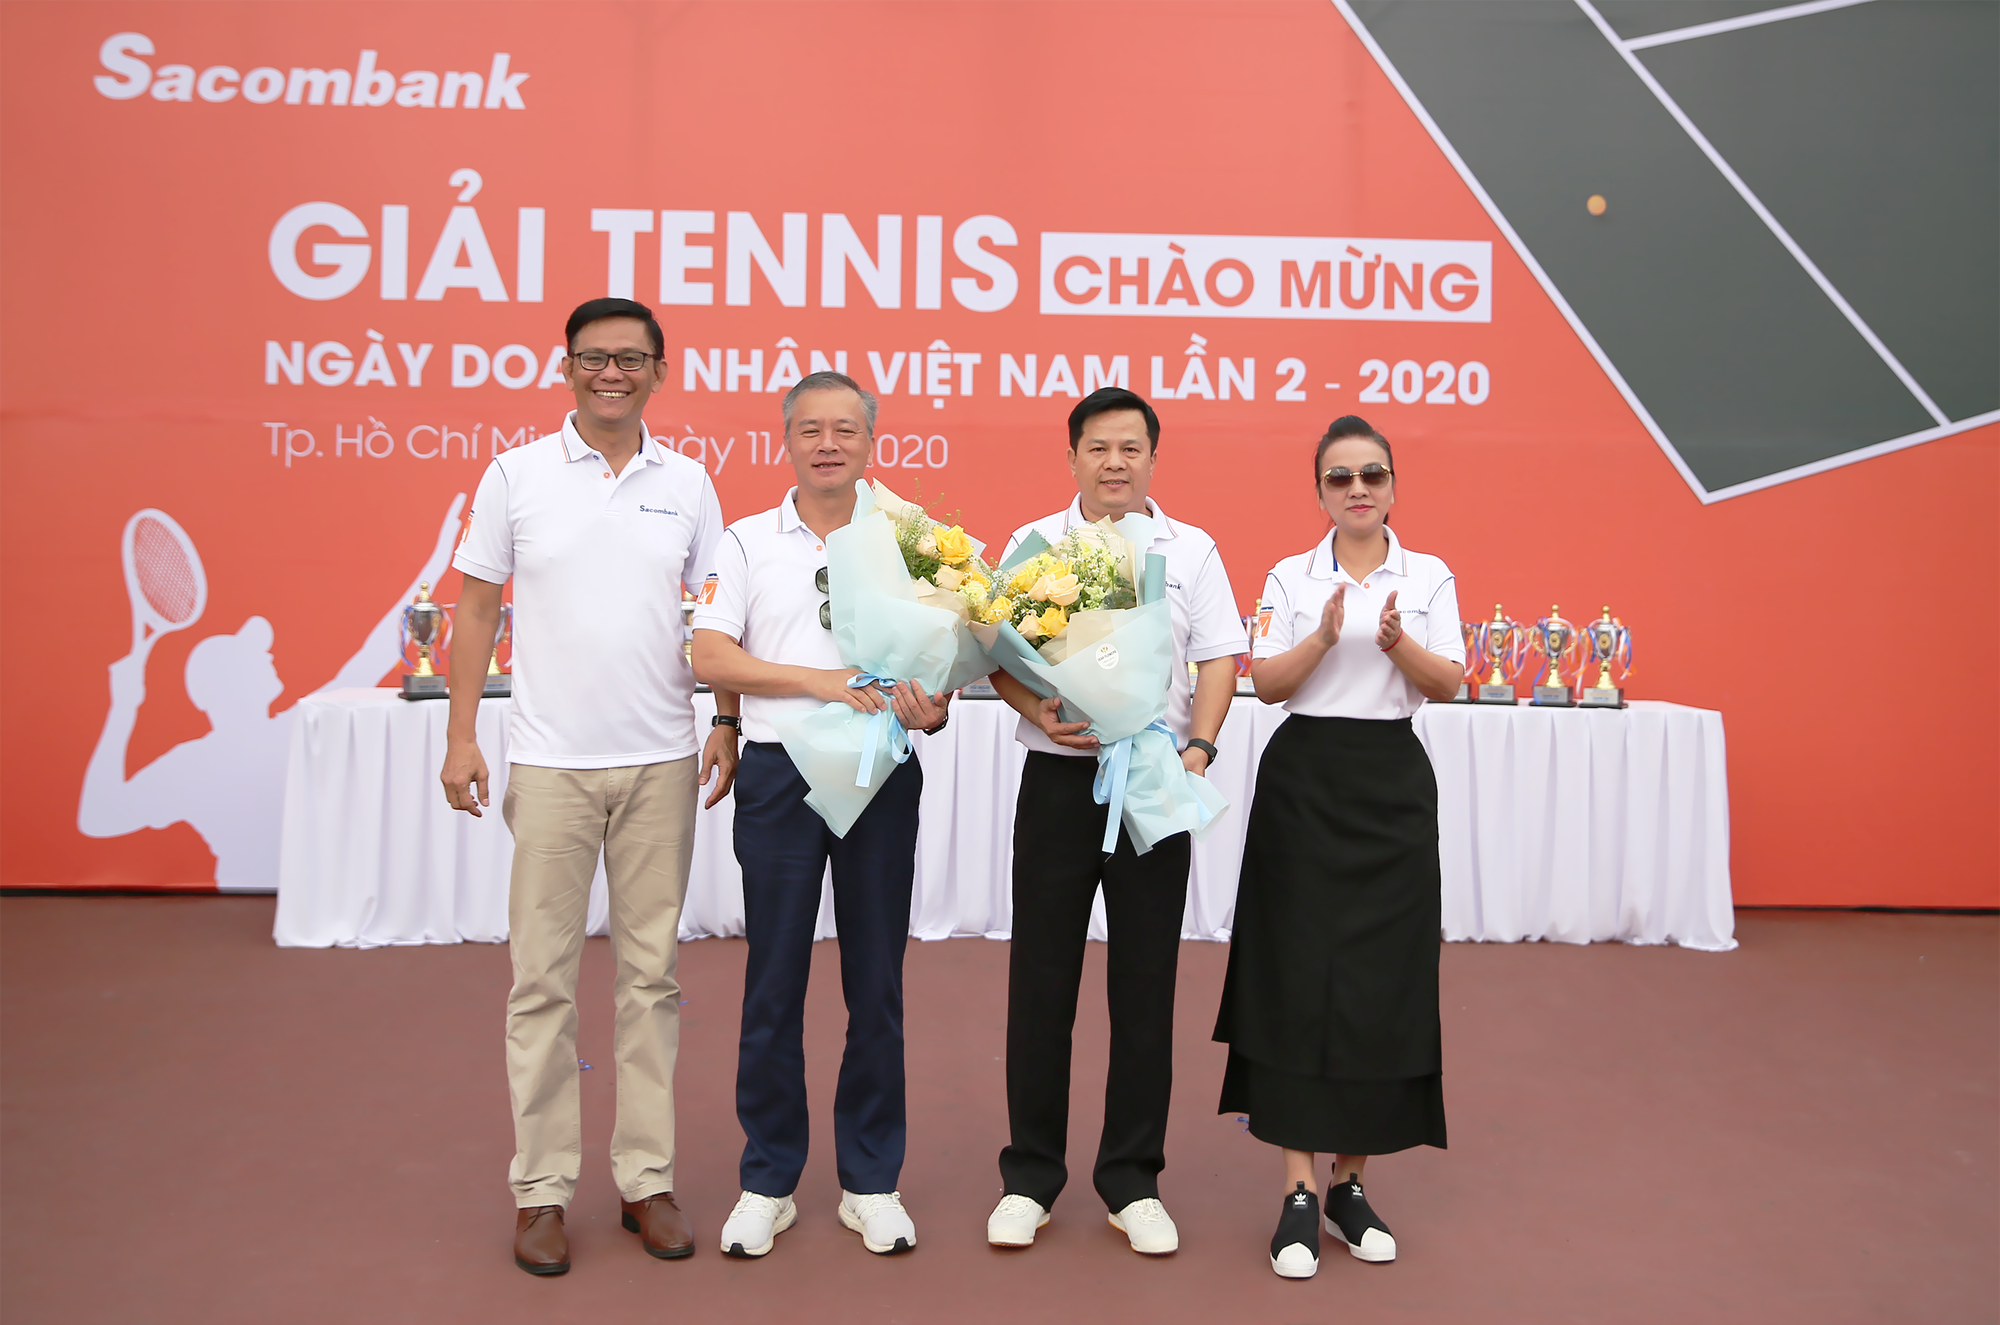  Sacombank tổ chức giải tennis chào mừng ngày Doanh nhân Việt Nam năm 2020 - Ảnh 1.